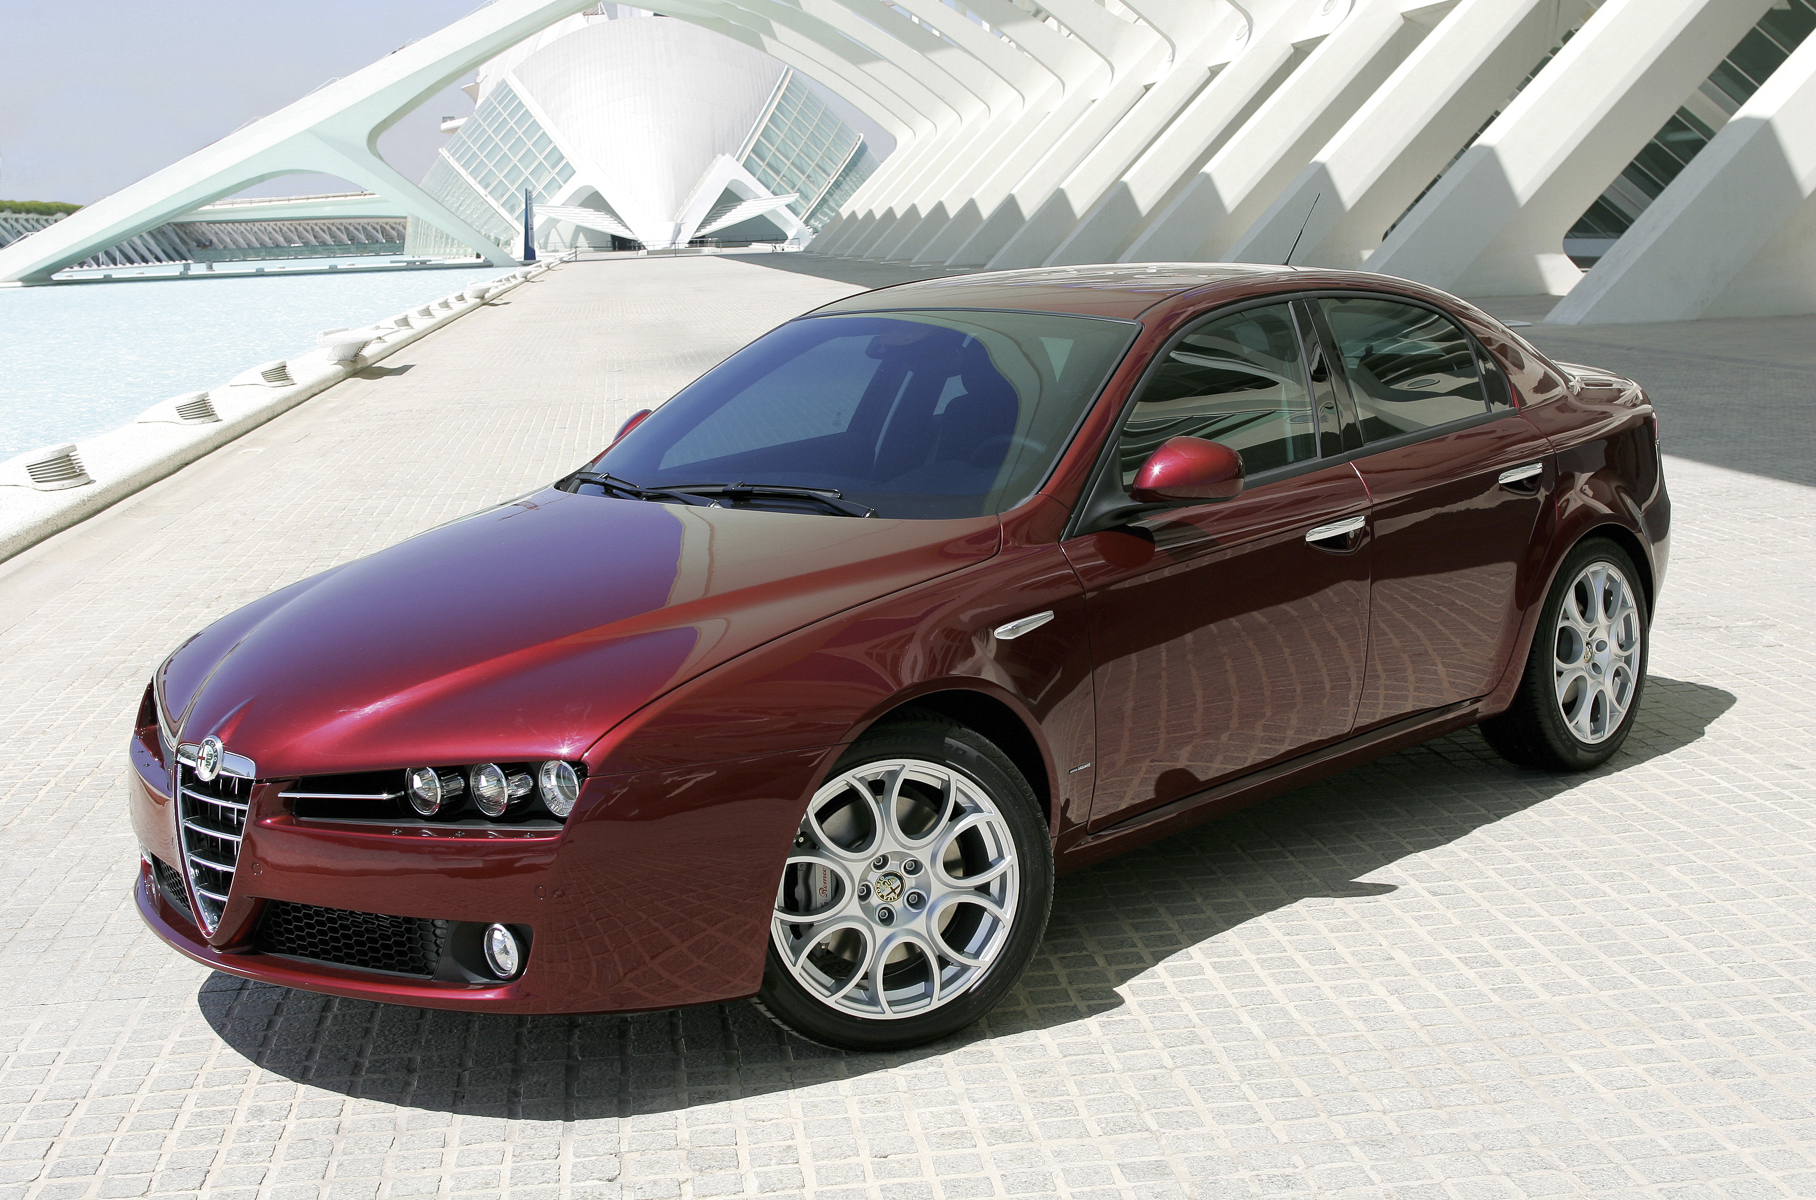 ## Alfa Romeo 159 Кто не знает красавицу-«Альфу»?! Седан и универсал с дизайном от Джорджетто Джуджаро и Centro Stile Alfa Romeo по сей день заставляют провожать их взглядом. И не важно, установлена ли под капотом бензиновая «турбочетверка» объемом 1,75 литра, топовый 3,2-литровый V6 или один из трех дизелей. Перед нами харизматичный самодостаточный продукт с индексом из… далекого прошлого.